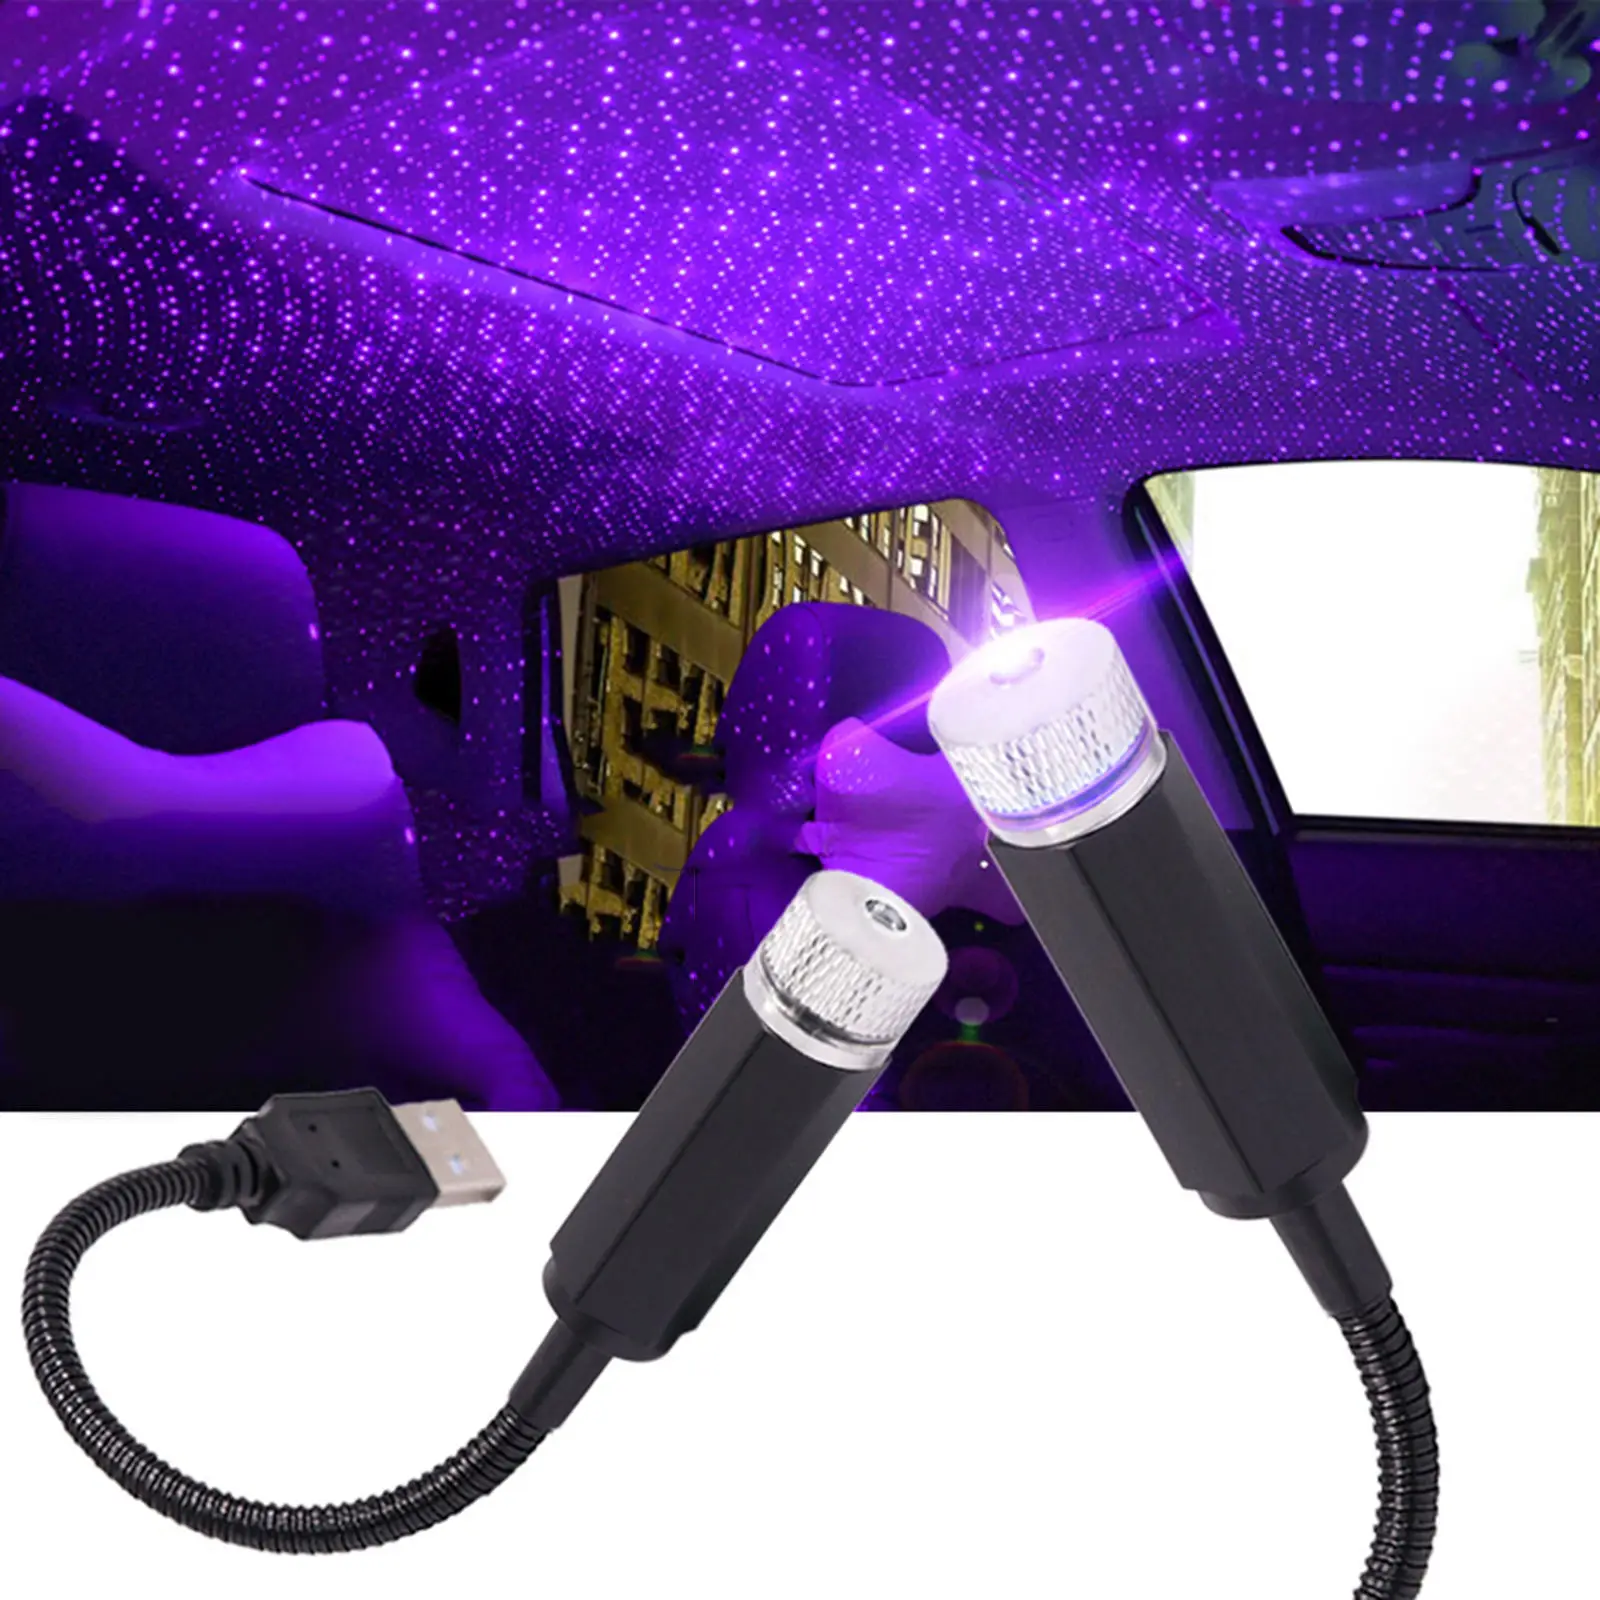 

USB звездный Ночной светильник, мини светодиодный Романтический атмосферный проектор, лампа для спальни, вечеринок